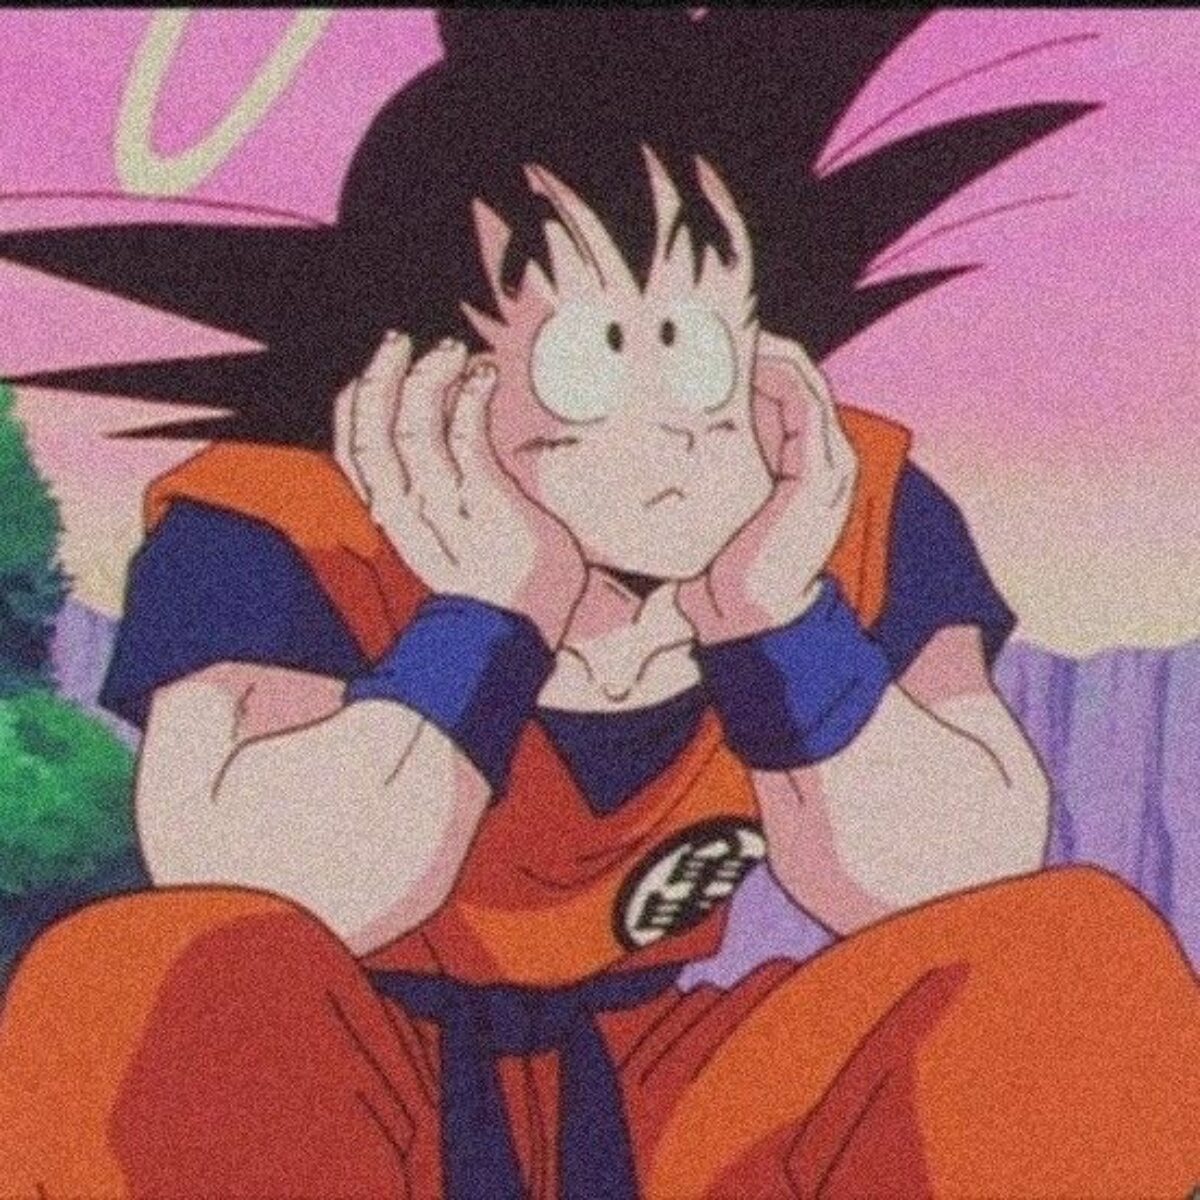 Dragon Ball Goku PFP - Cool Anime PFP for TikTok, Discord, IG